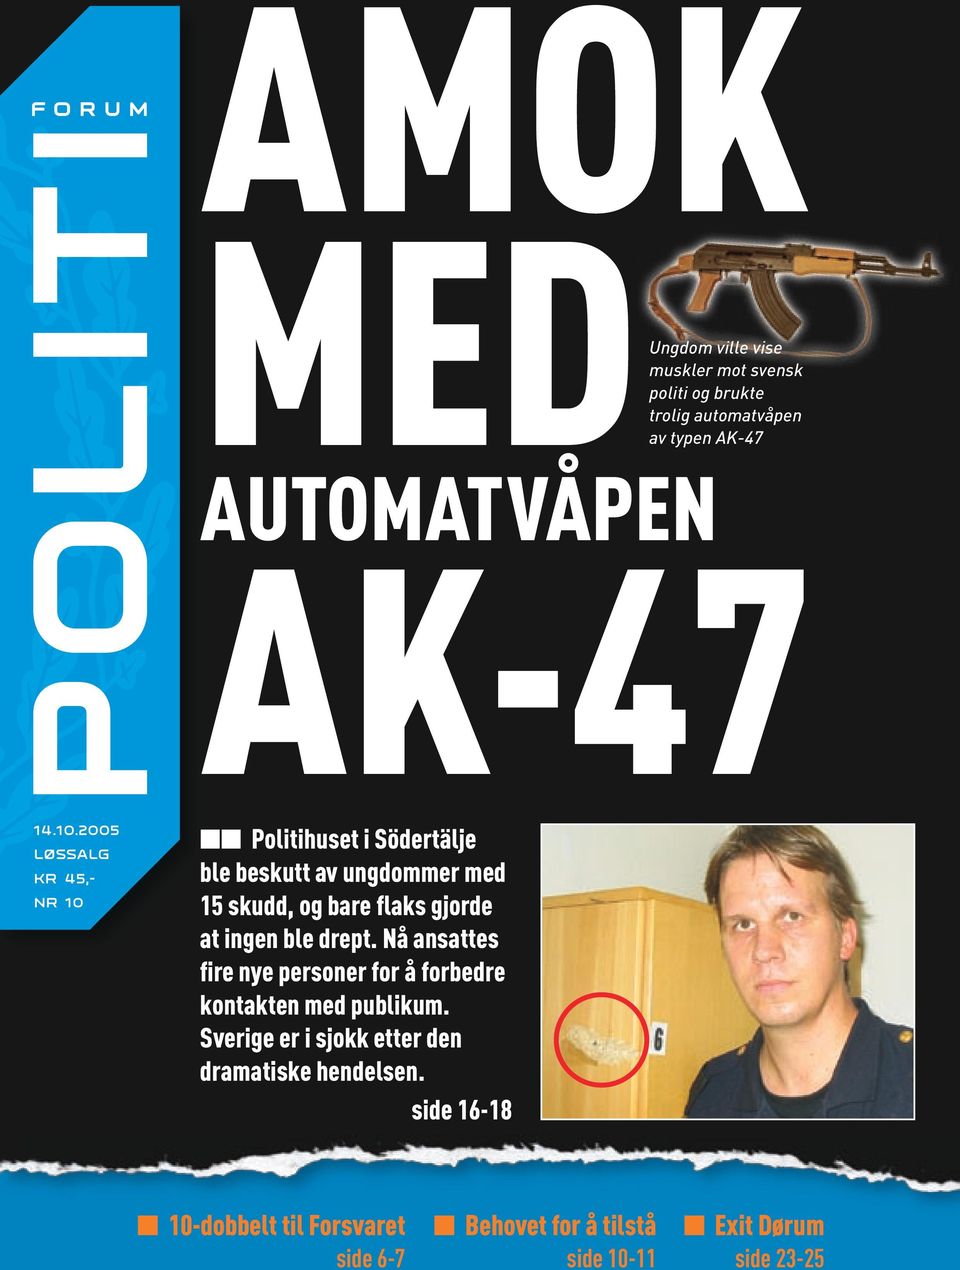 2005 LØSSALG KR 45,- NR 10 Politihuset i Södertälje ble beskutt av ungdommer med 15 skudd, og bare flaks gjorde at